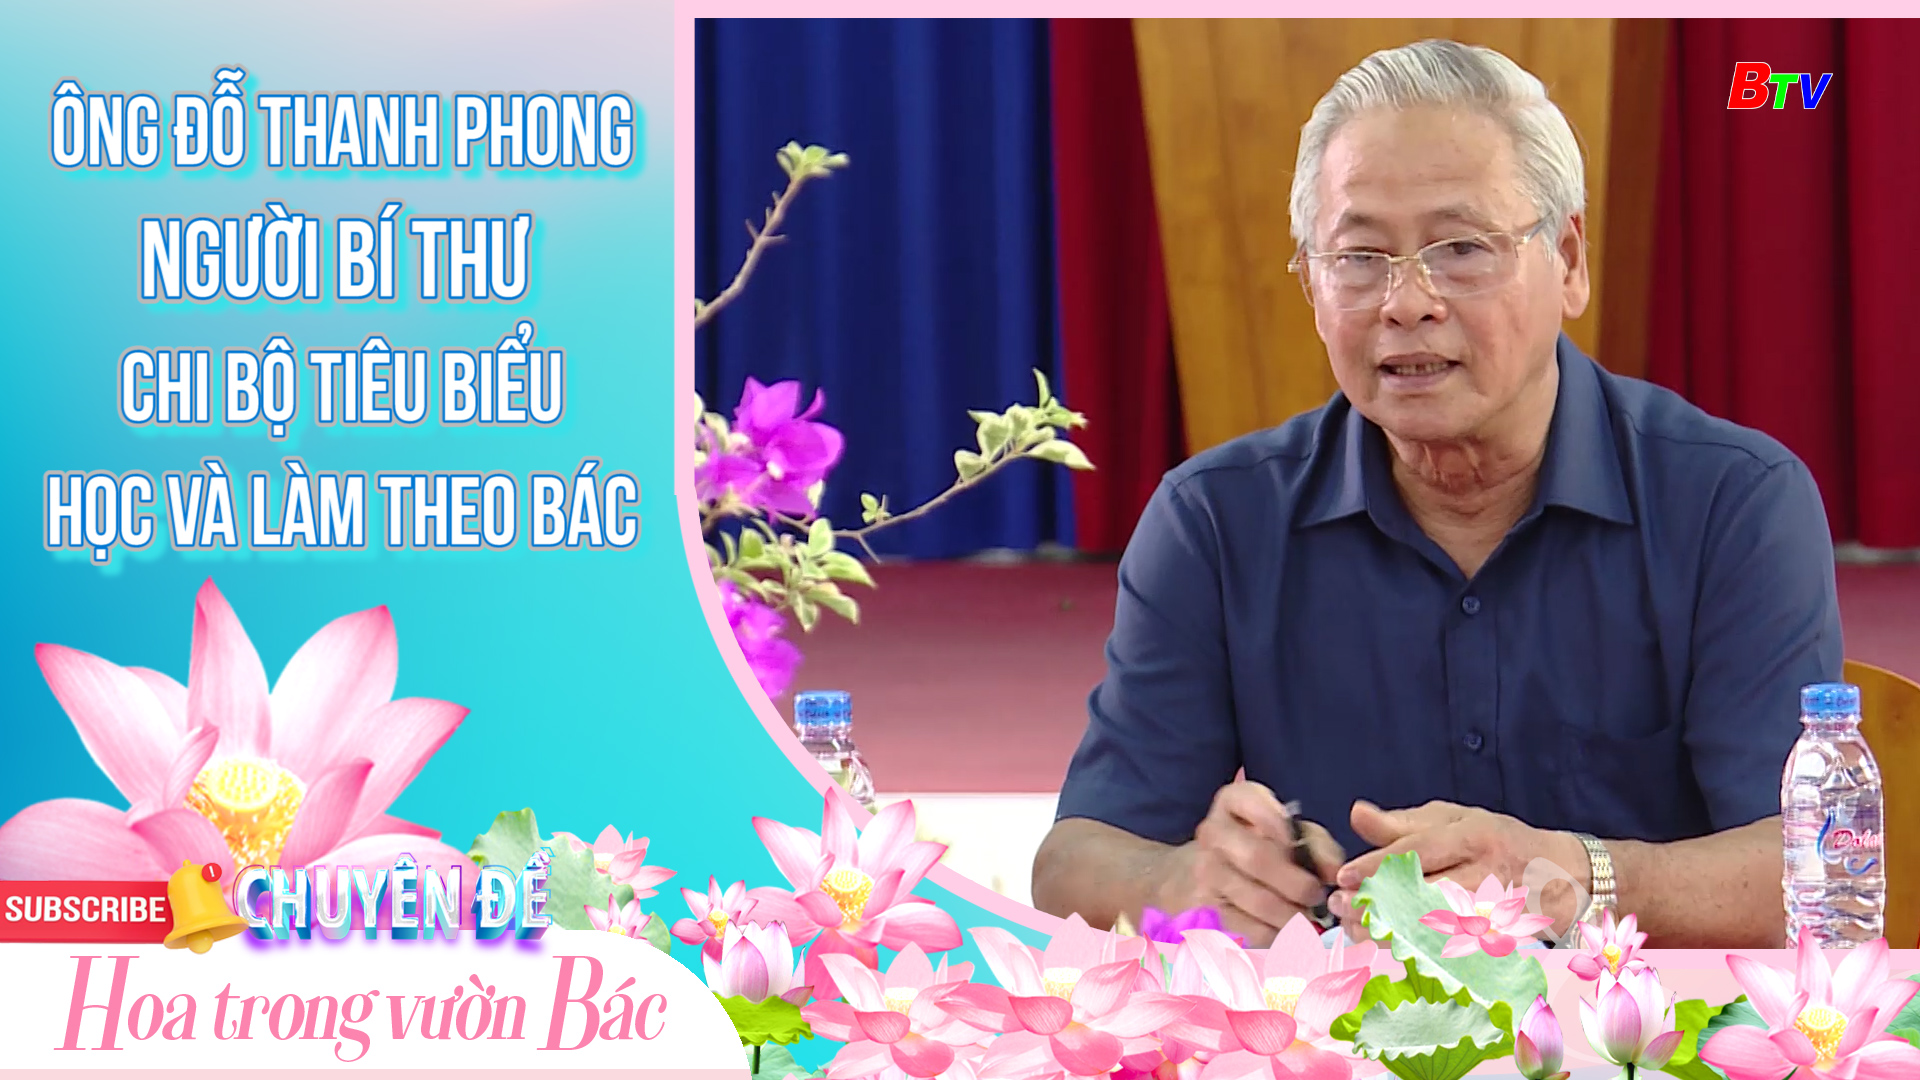 Ông Đỗ Thanh Phong - Người bí thư chi bộ tiêu biểu học và làm theo Bác